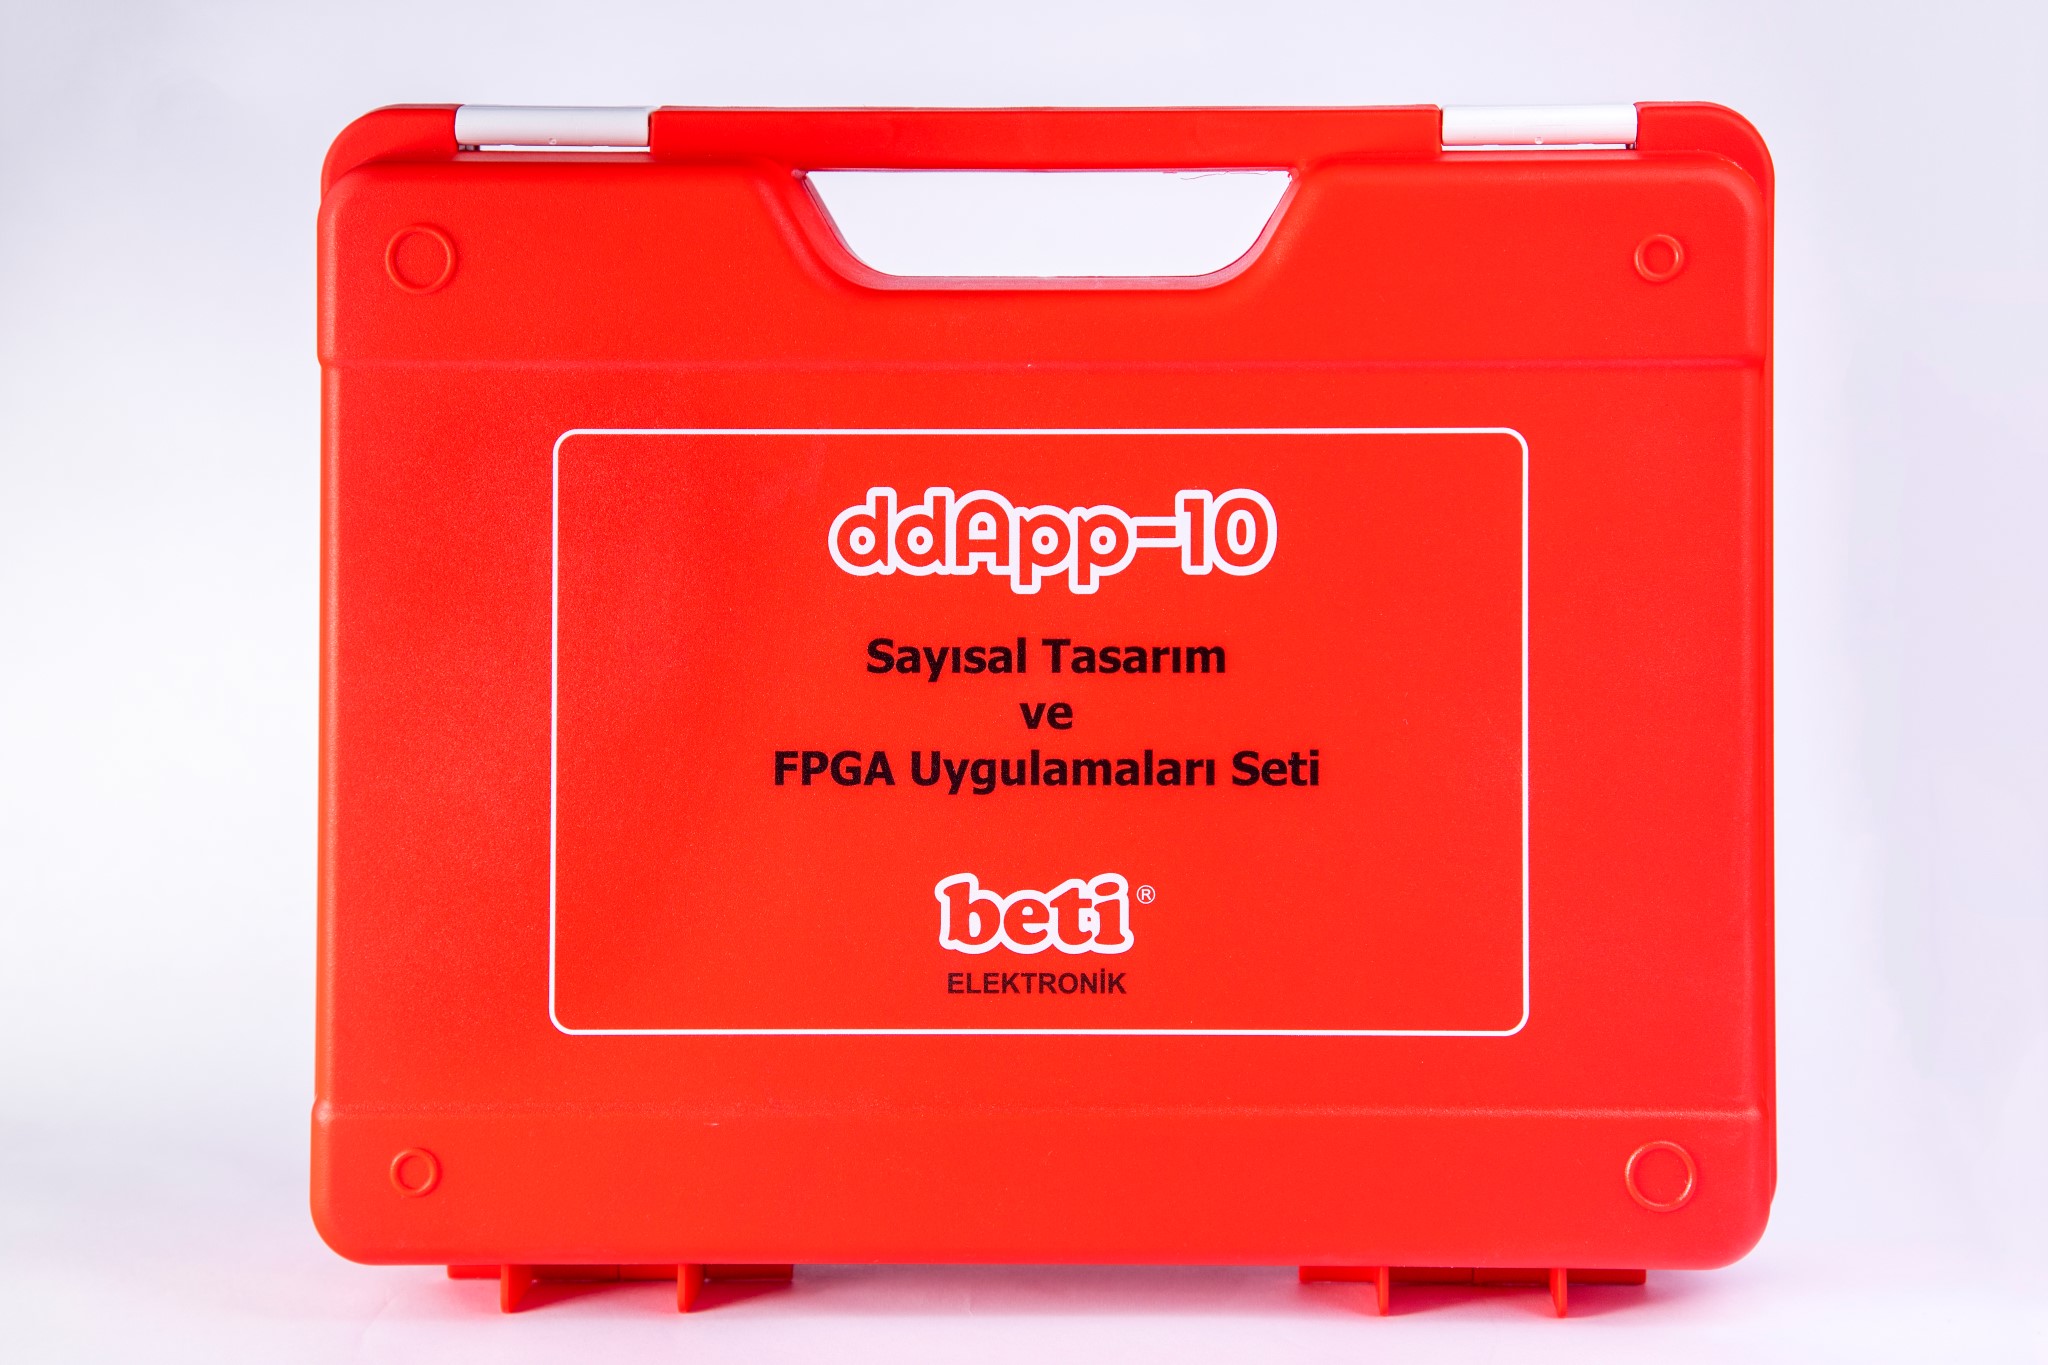 ddApp-10 Sayısal Tasarım ve FPGA Uygulamaları Eğitim Seti Kutusu